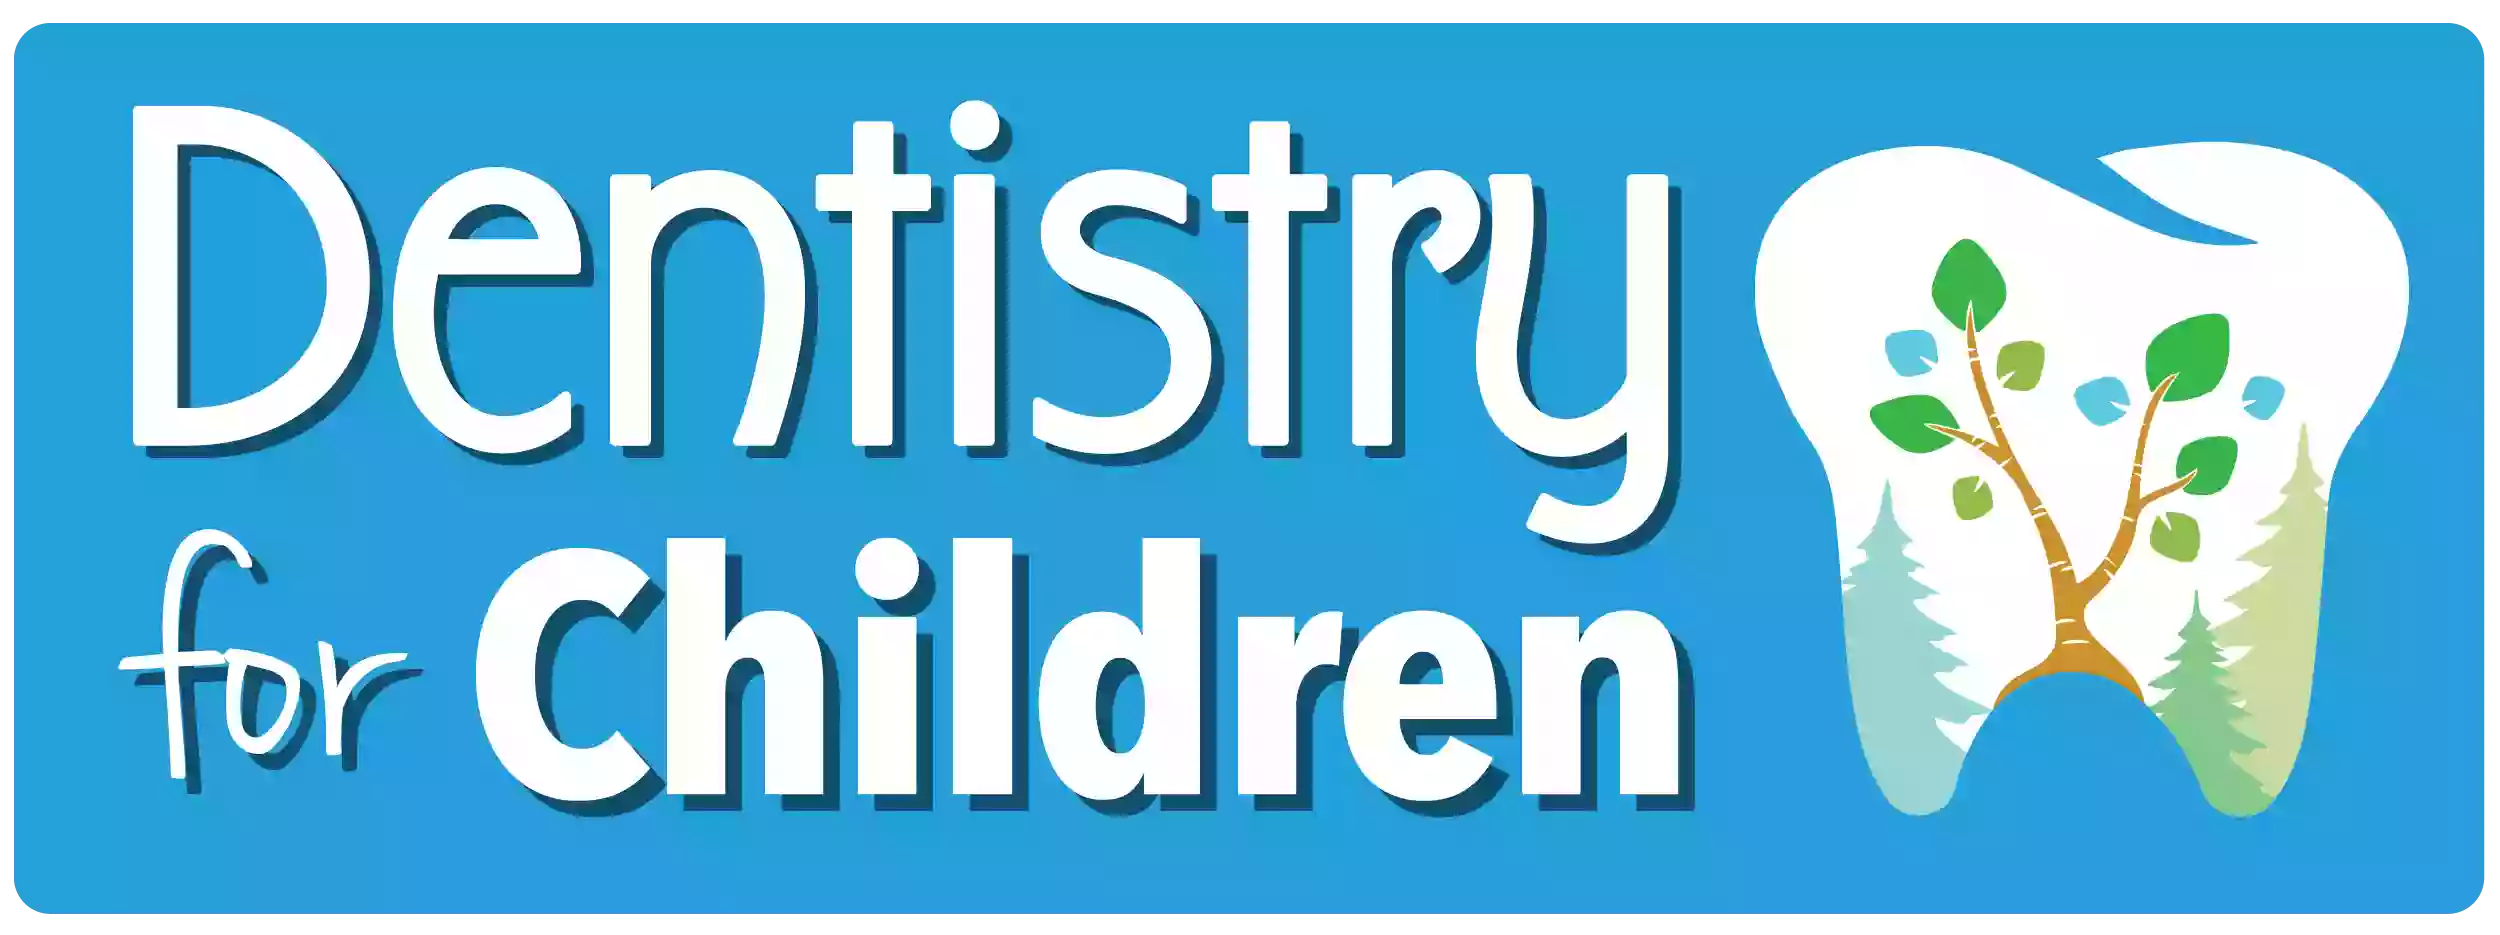 Dentistry For Children